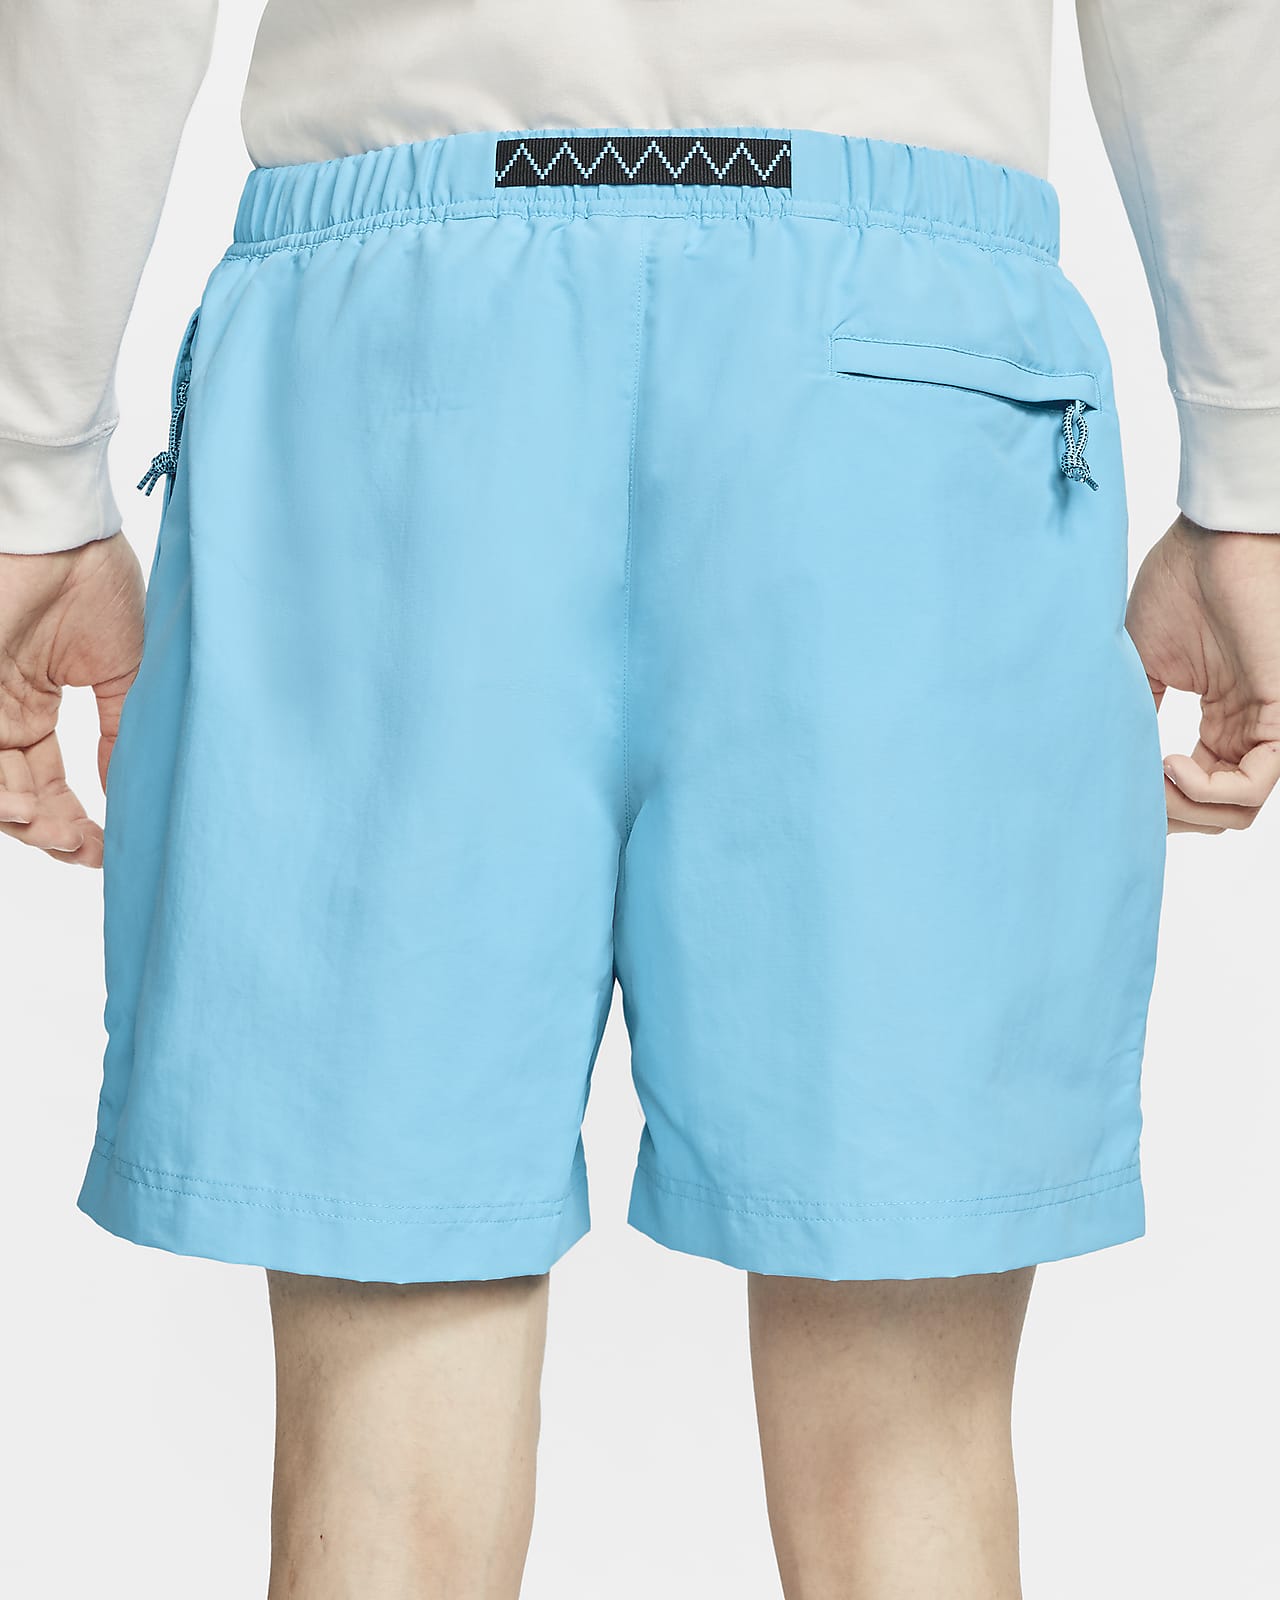 nike turquoise shorts